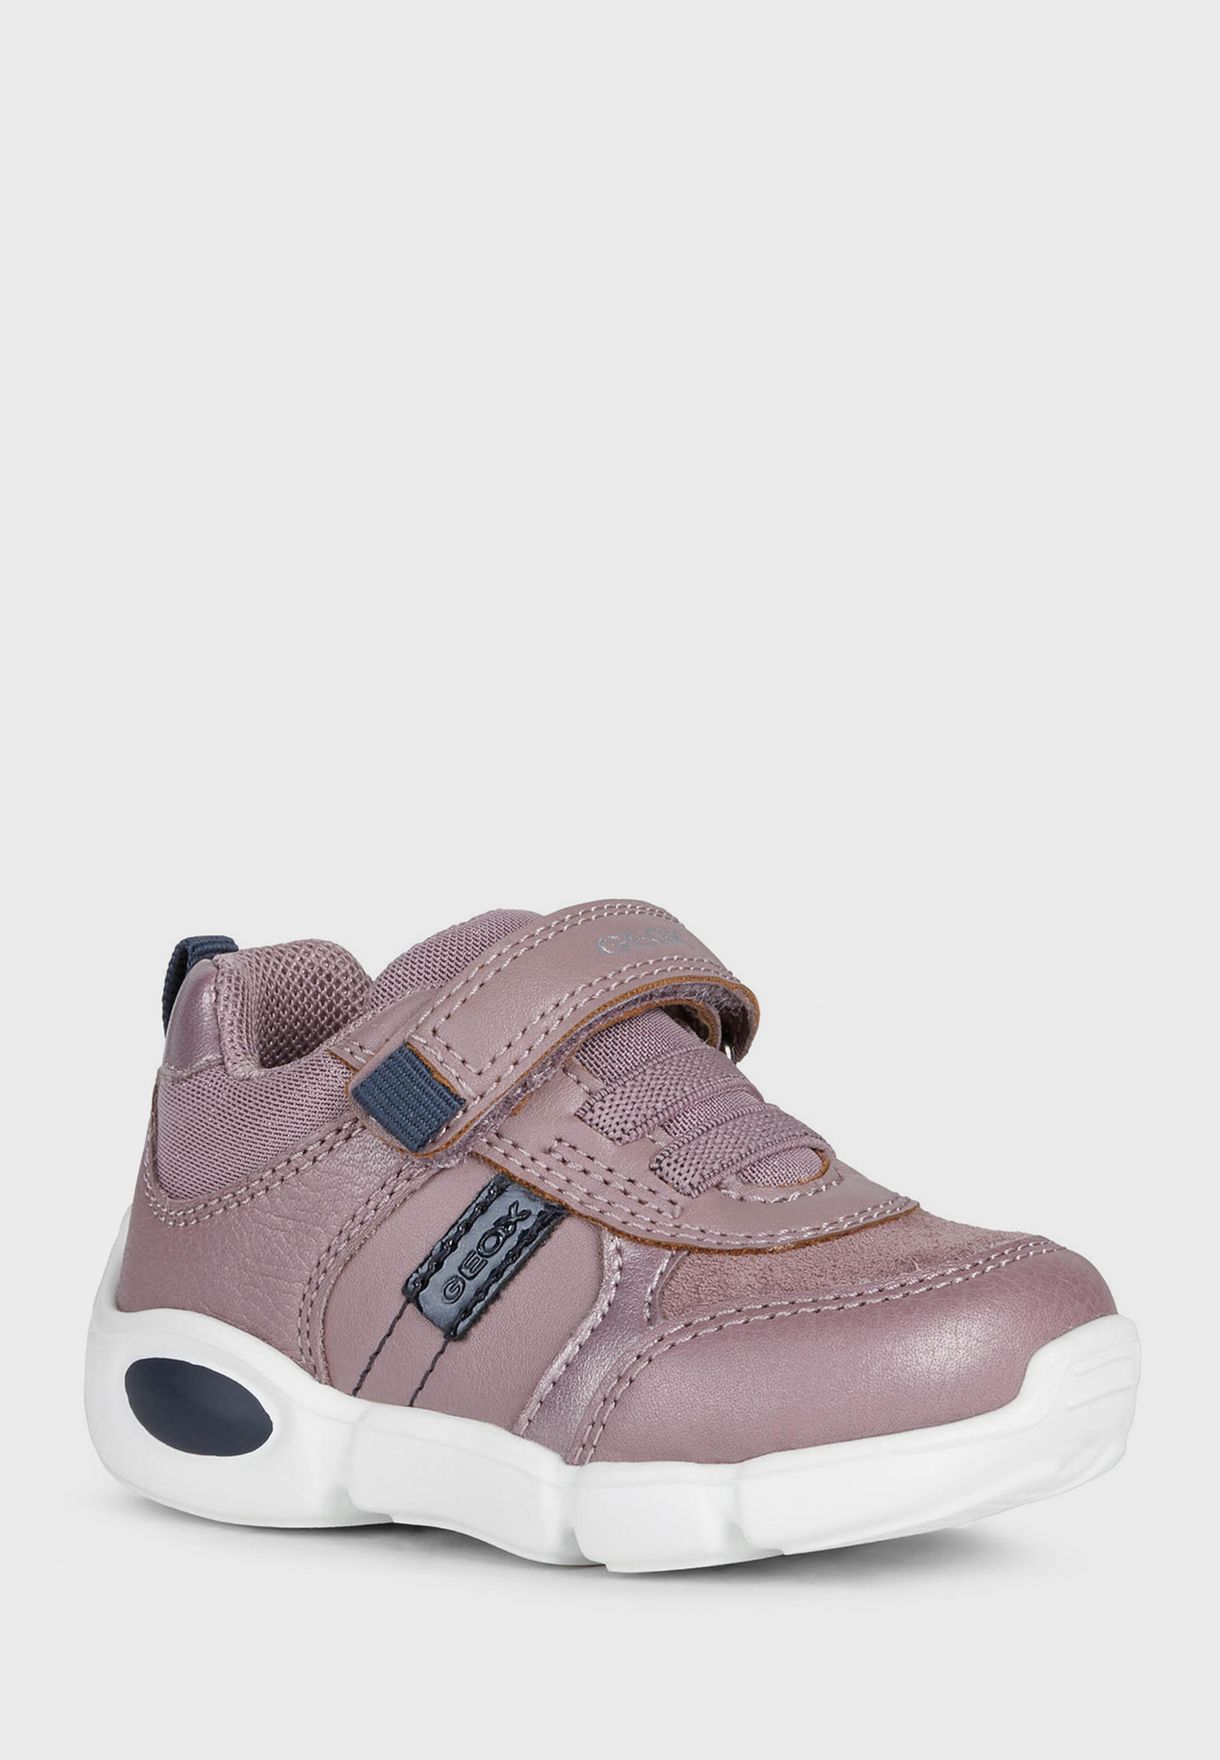 Kids Sneakers